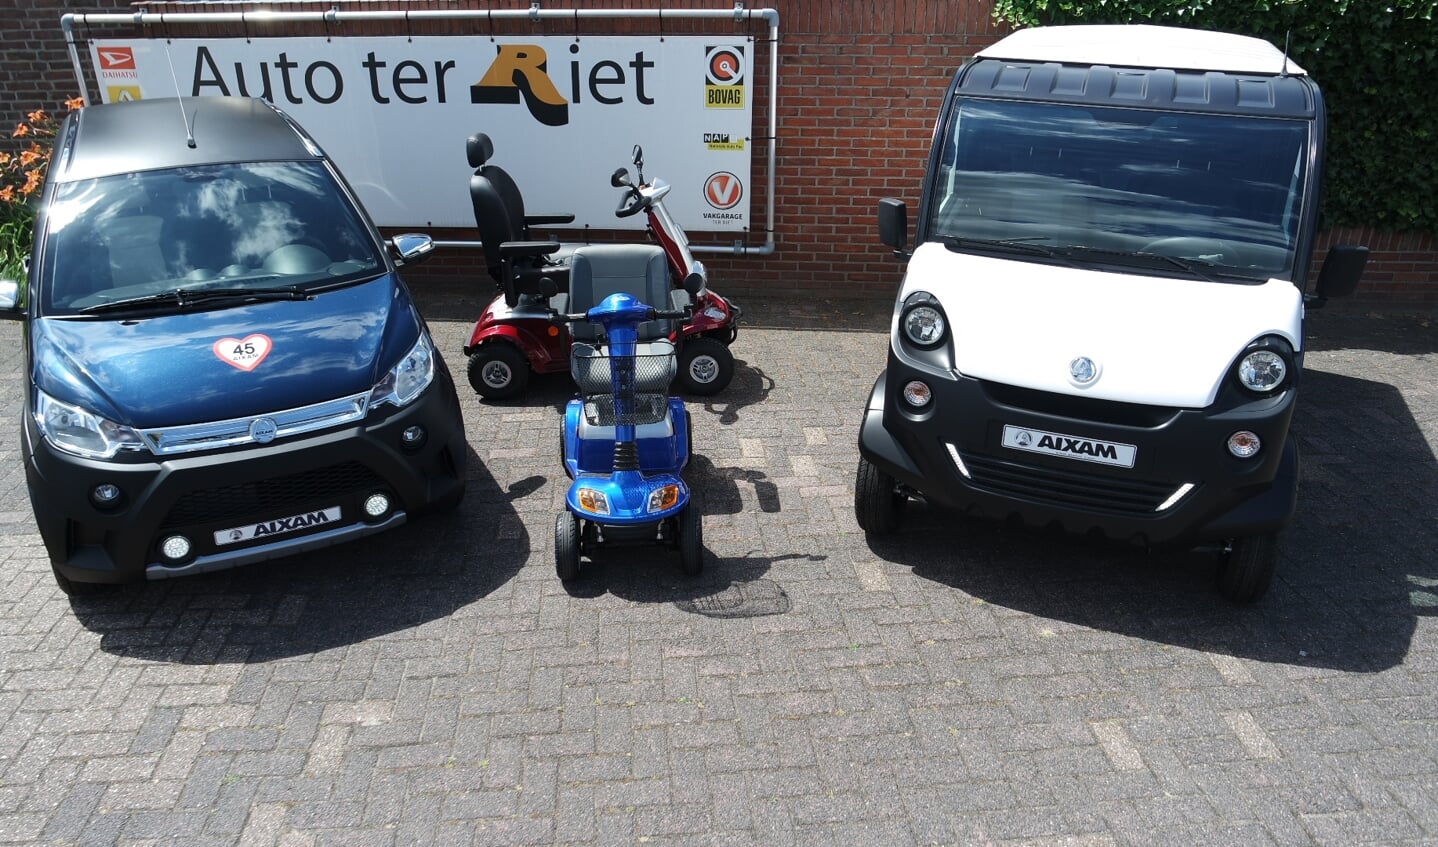 Auto ter Riet is de Aixam dealer in de regio Twente. Zij bieden zowel nieuwe als gebruikte brommobielen aan. Kom langs voor een kennismaking en goed advies.